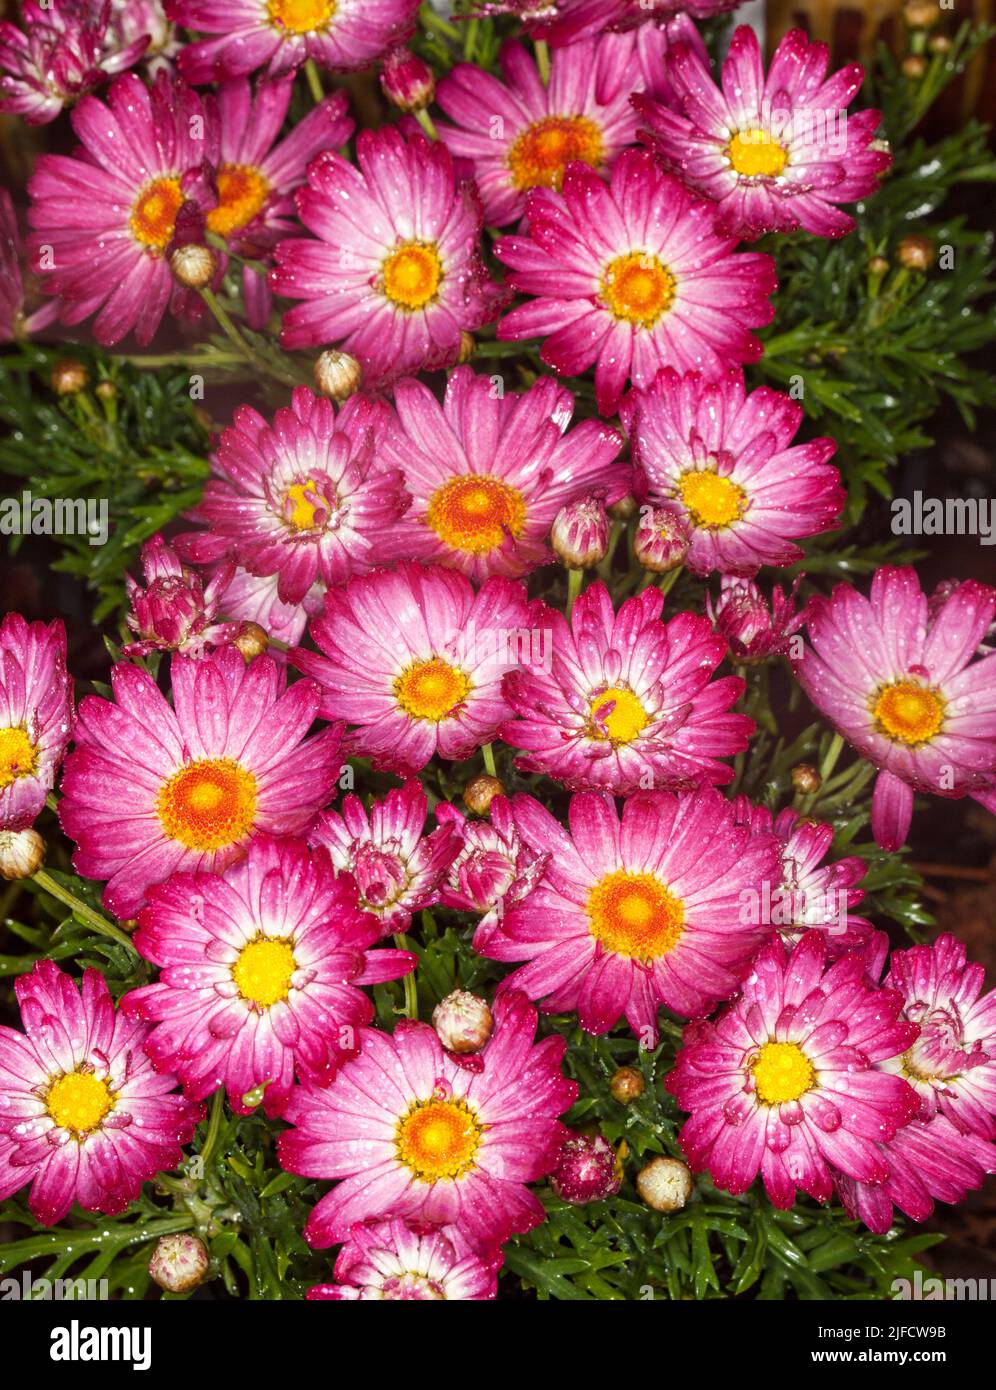 Masse von atemberaubenden lebendigen rosa und weißen Blüten von Argyranthemum frutescens, Marguerite Daisy, eine mehrjährige Gartenpflanze mit Regentropfen auf Blütenblättern Stockfoto